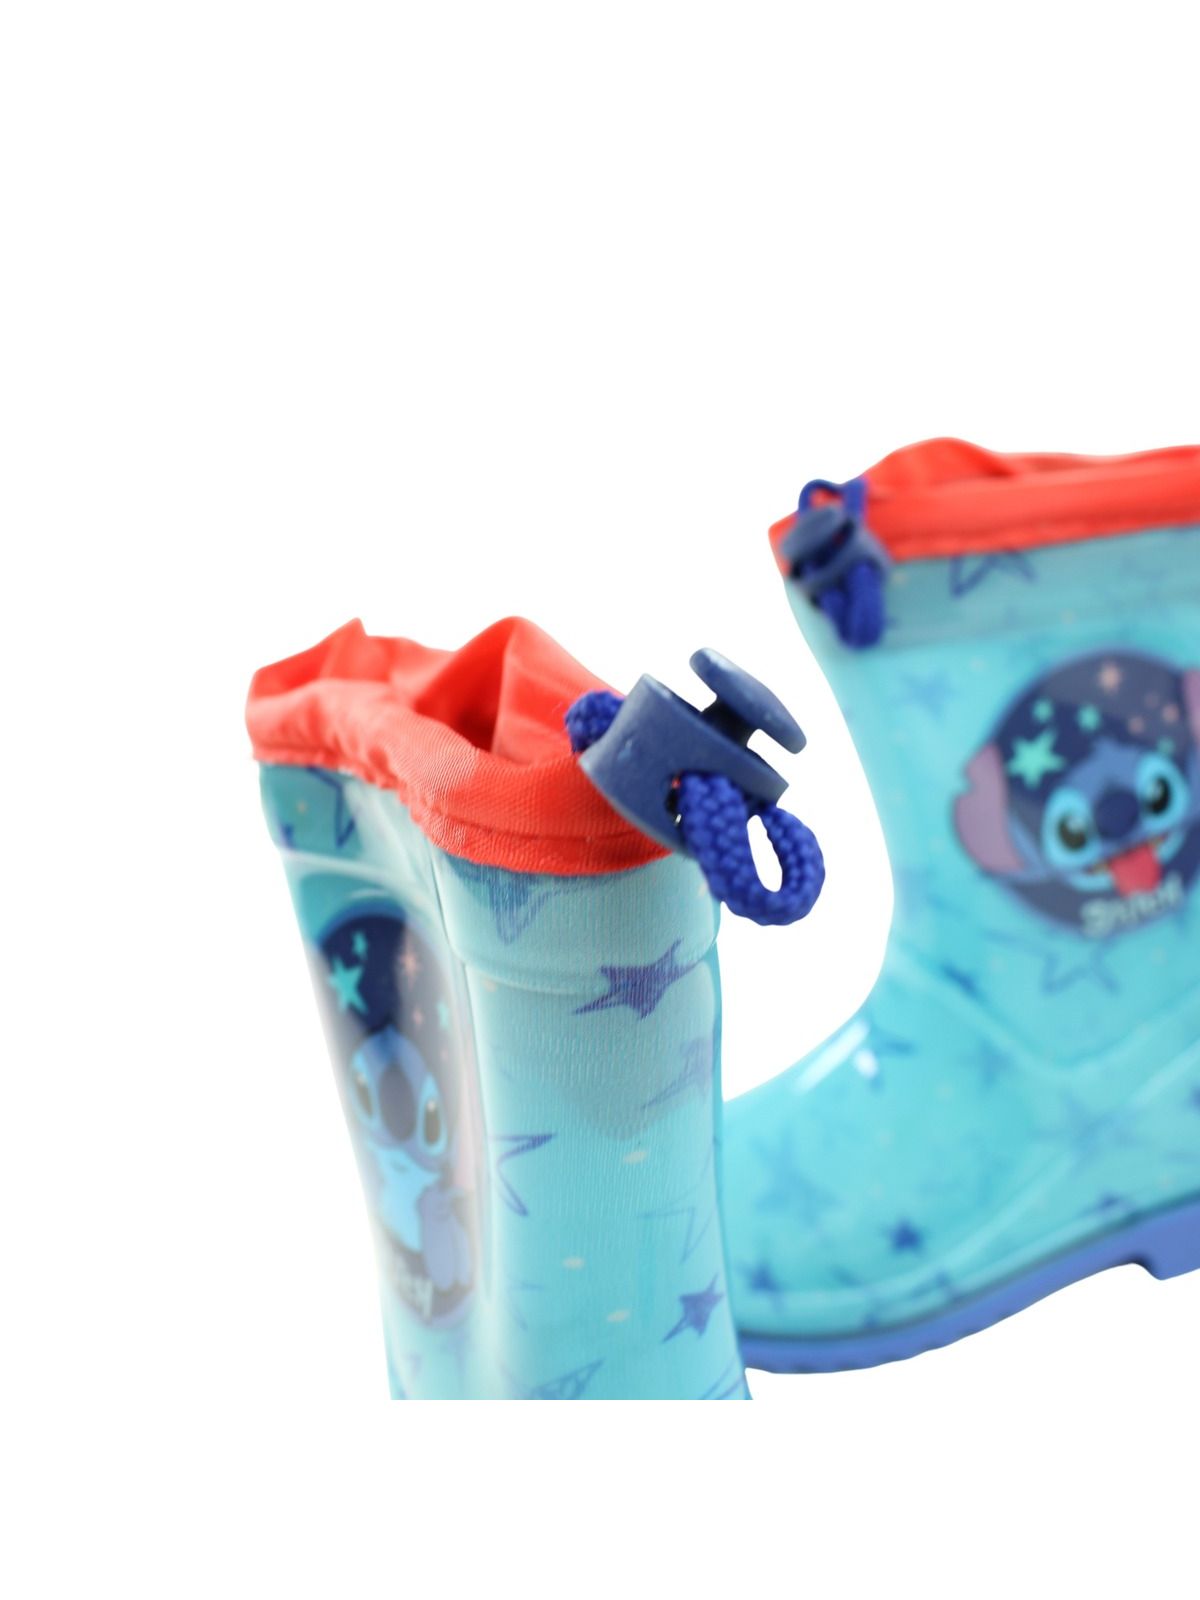 Lilo Stitch Rain boot